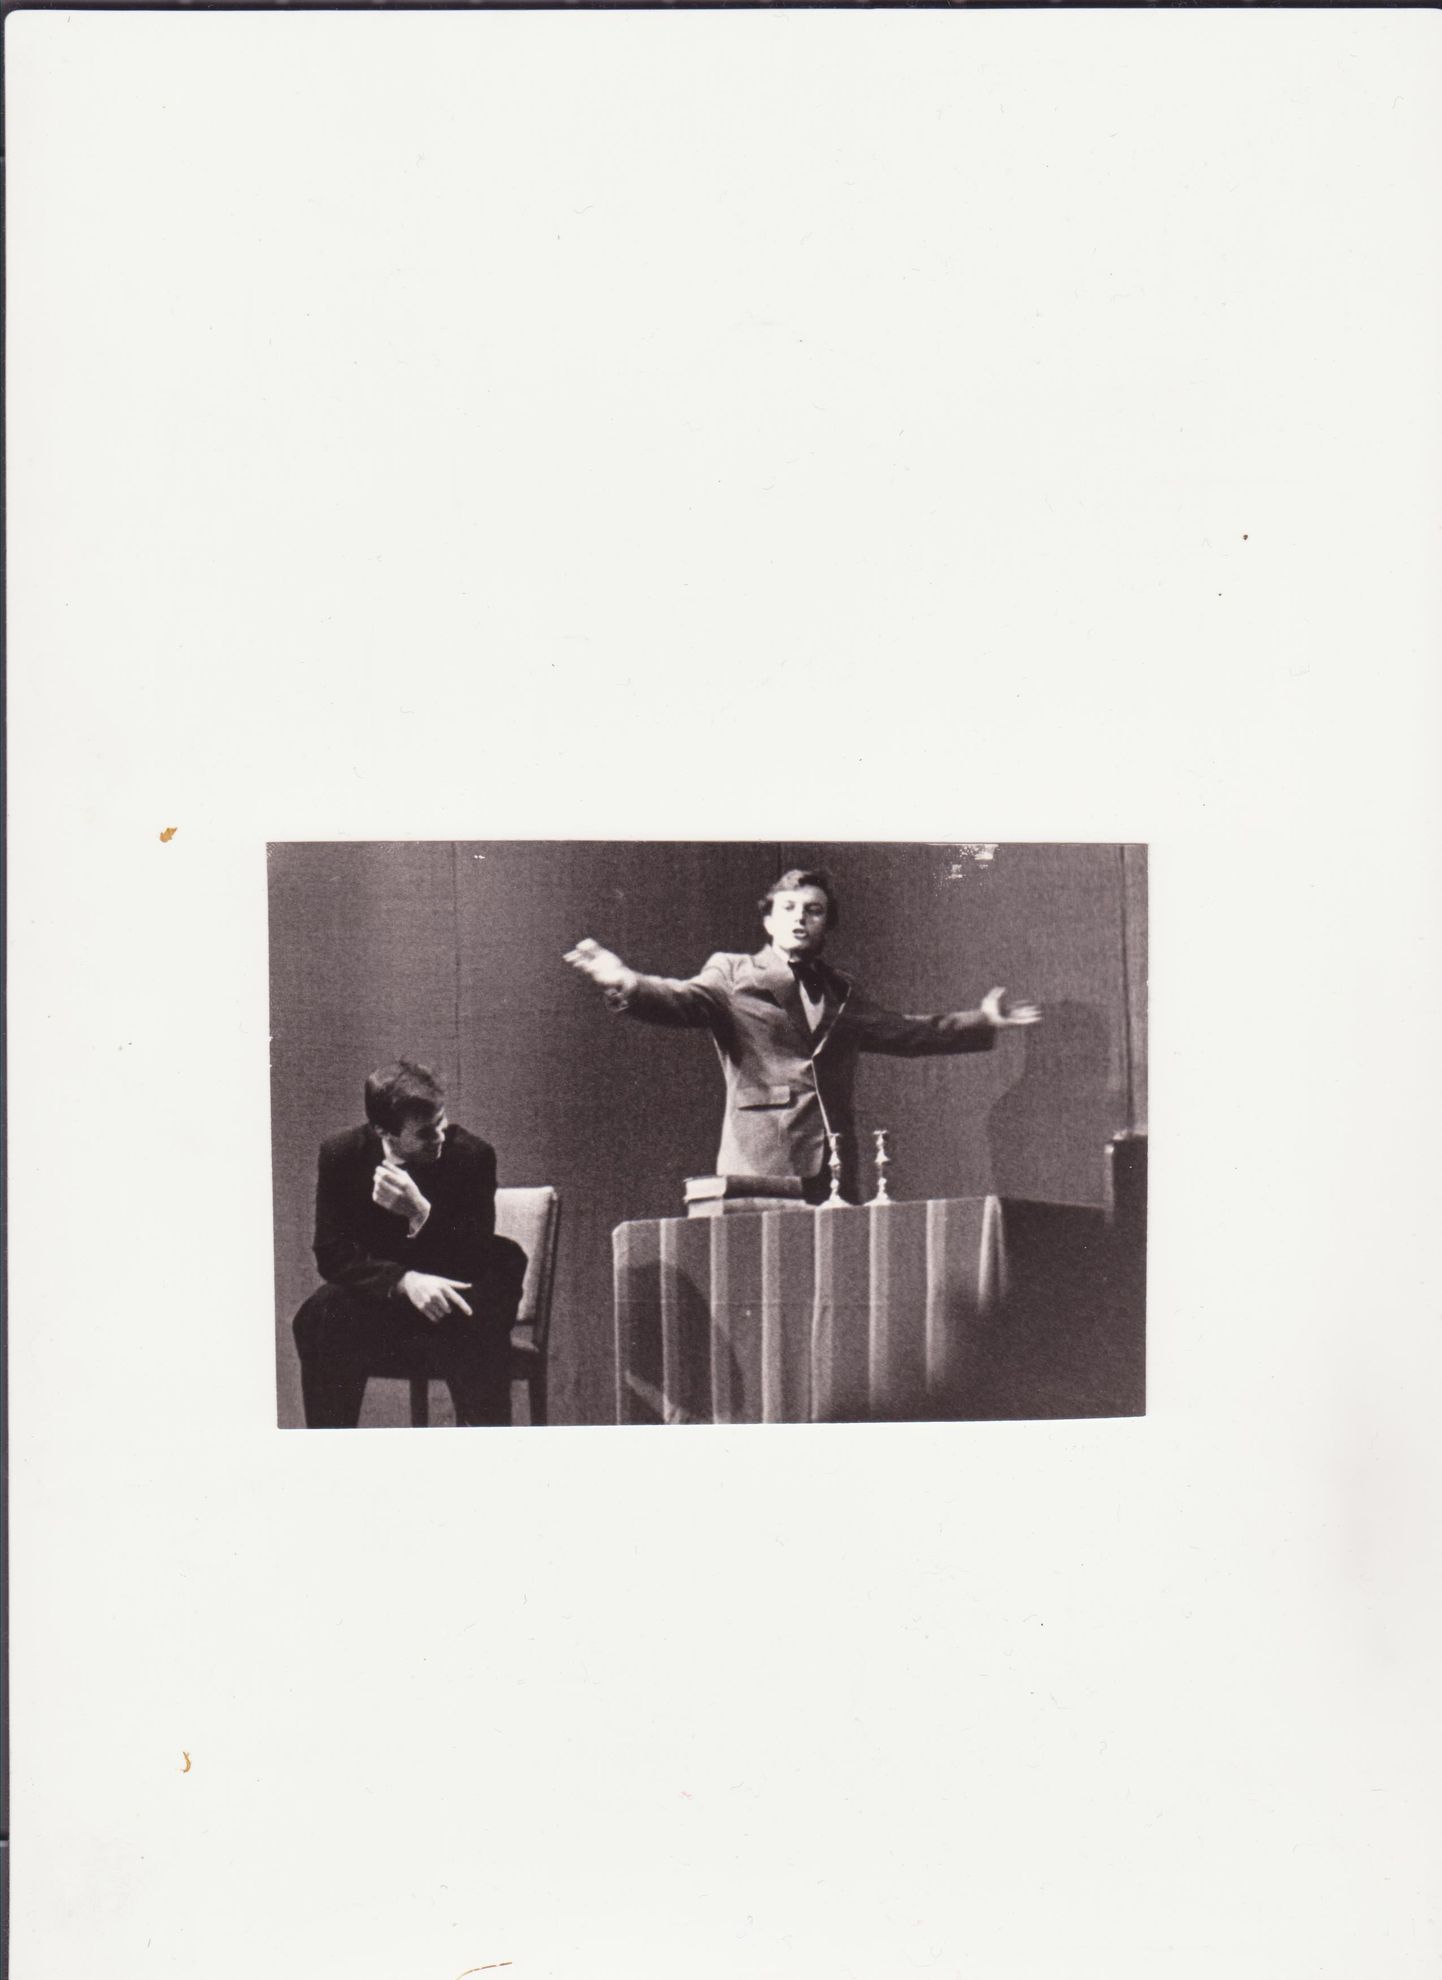 Urmas Kõljalg ja Jüri Luik «Valhalla» lavastuses «Noor-Eesti» (tekst Eerik-Niiles Kross, lavastaja Toomas Kiho) 11. aprillil 1987. TRÜ klubis